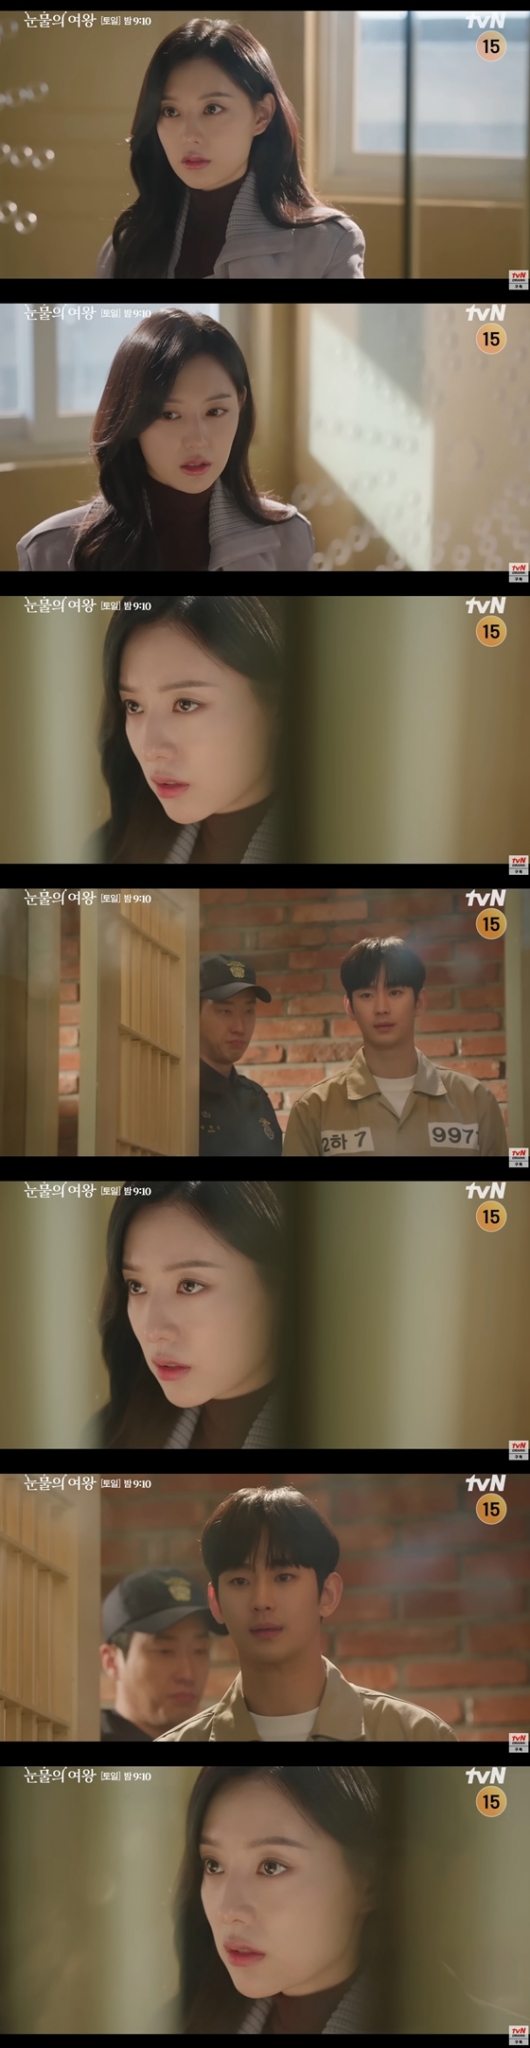 tvN 토일드라마 '눈물의 여왕' 선공개 영상./사진=유튜브 채널 'tvN drama' 영상 캡처